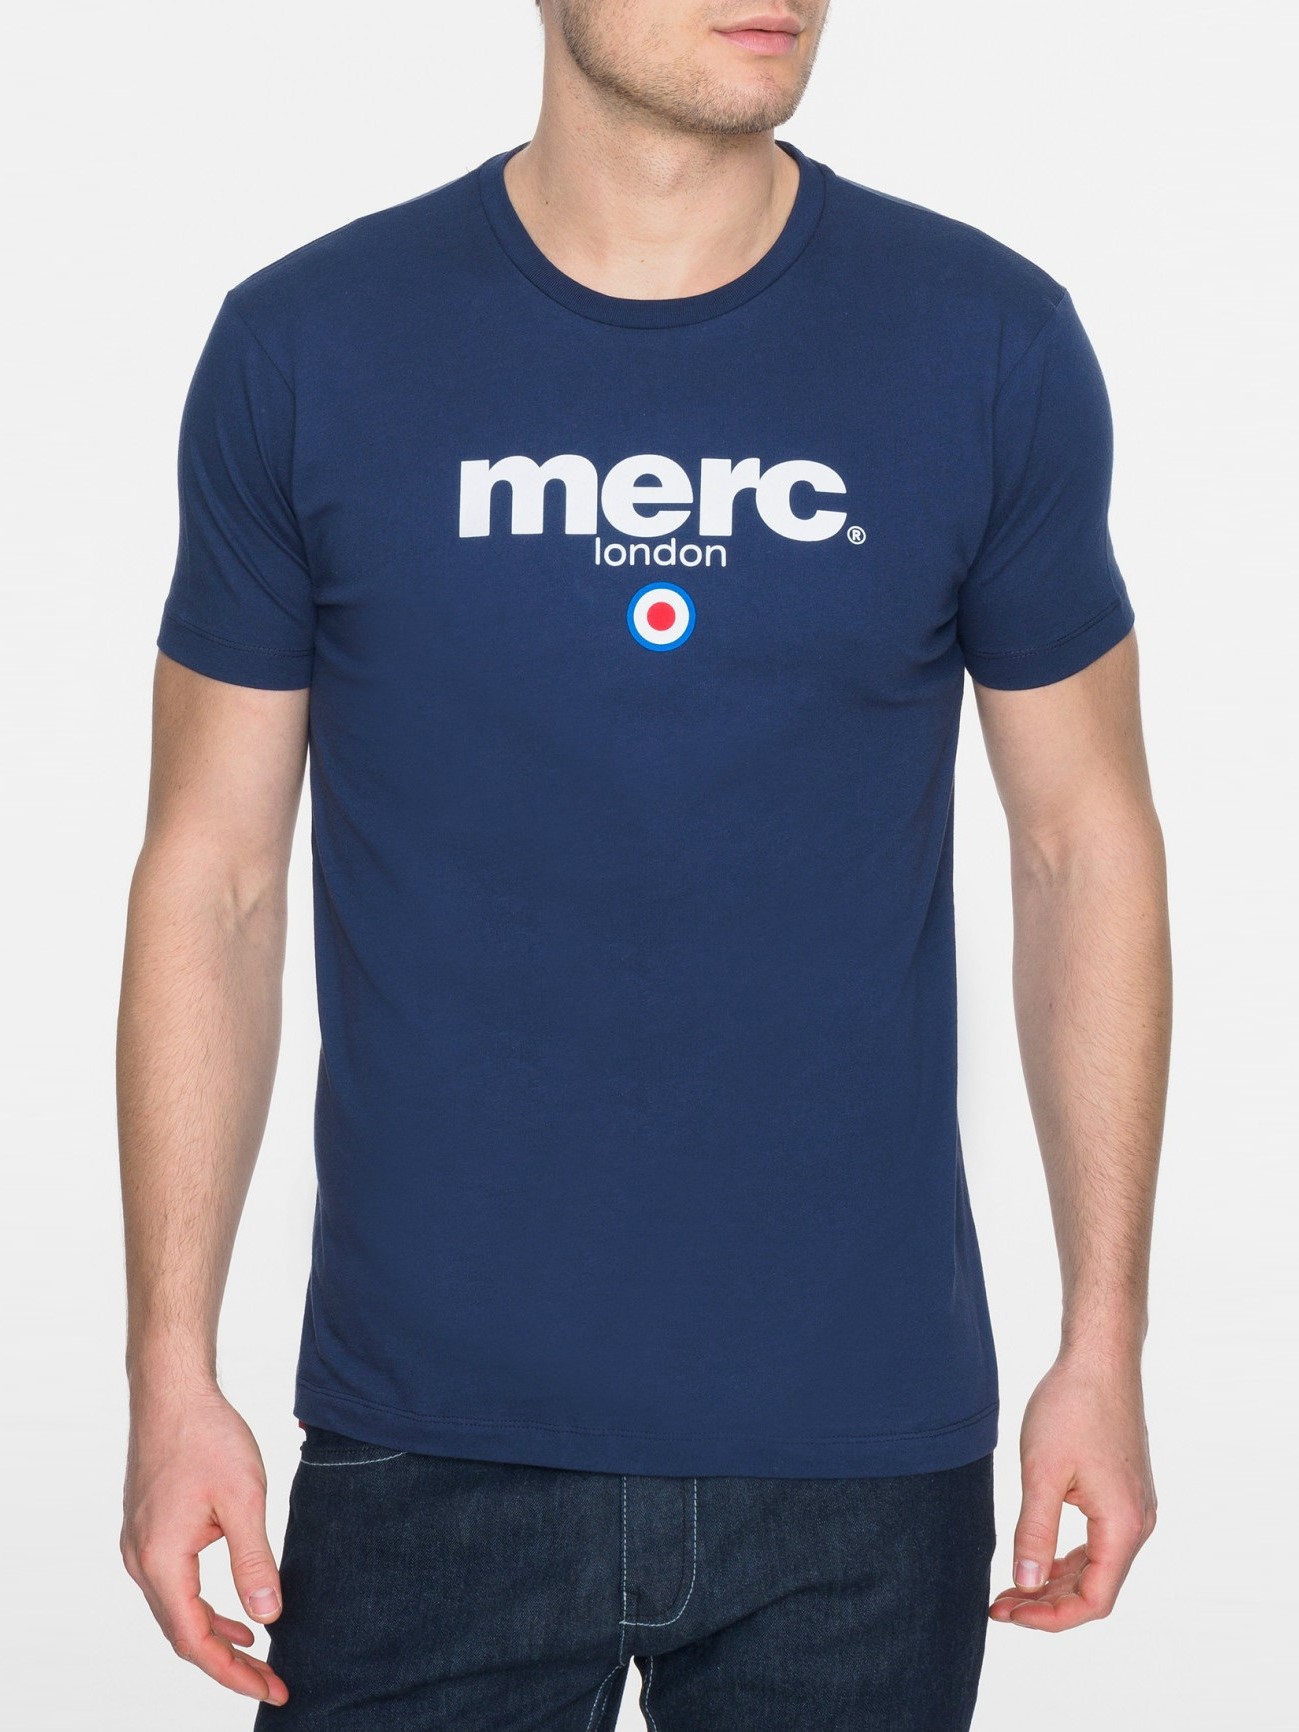 Мужская футболка с классическим логотипом Merc Brighton, navy (синяя), купить на официальном сайте